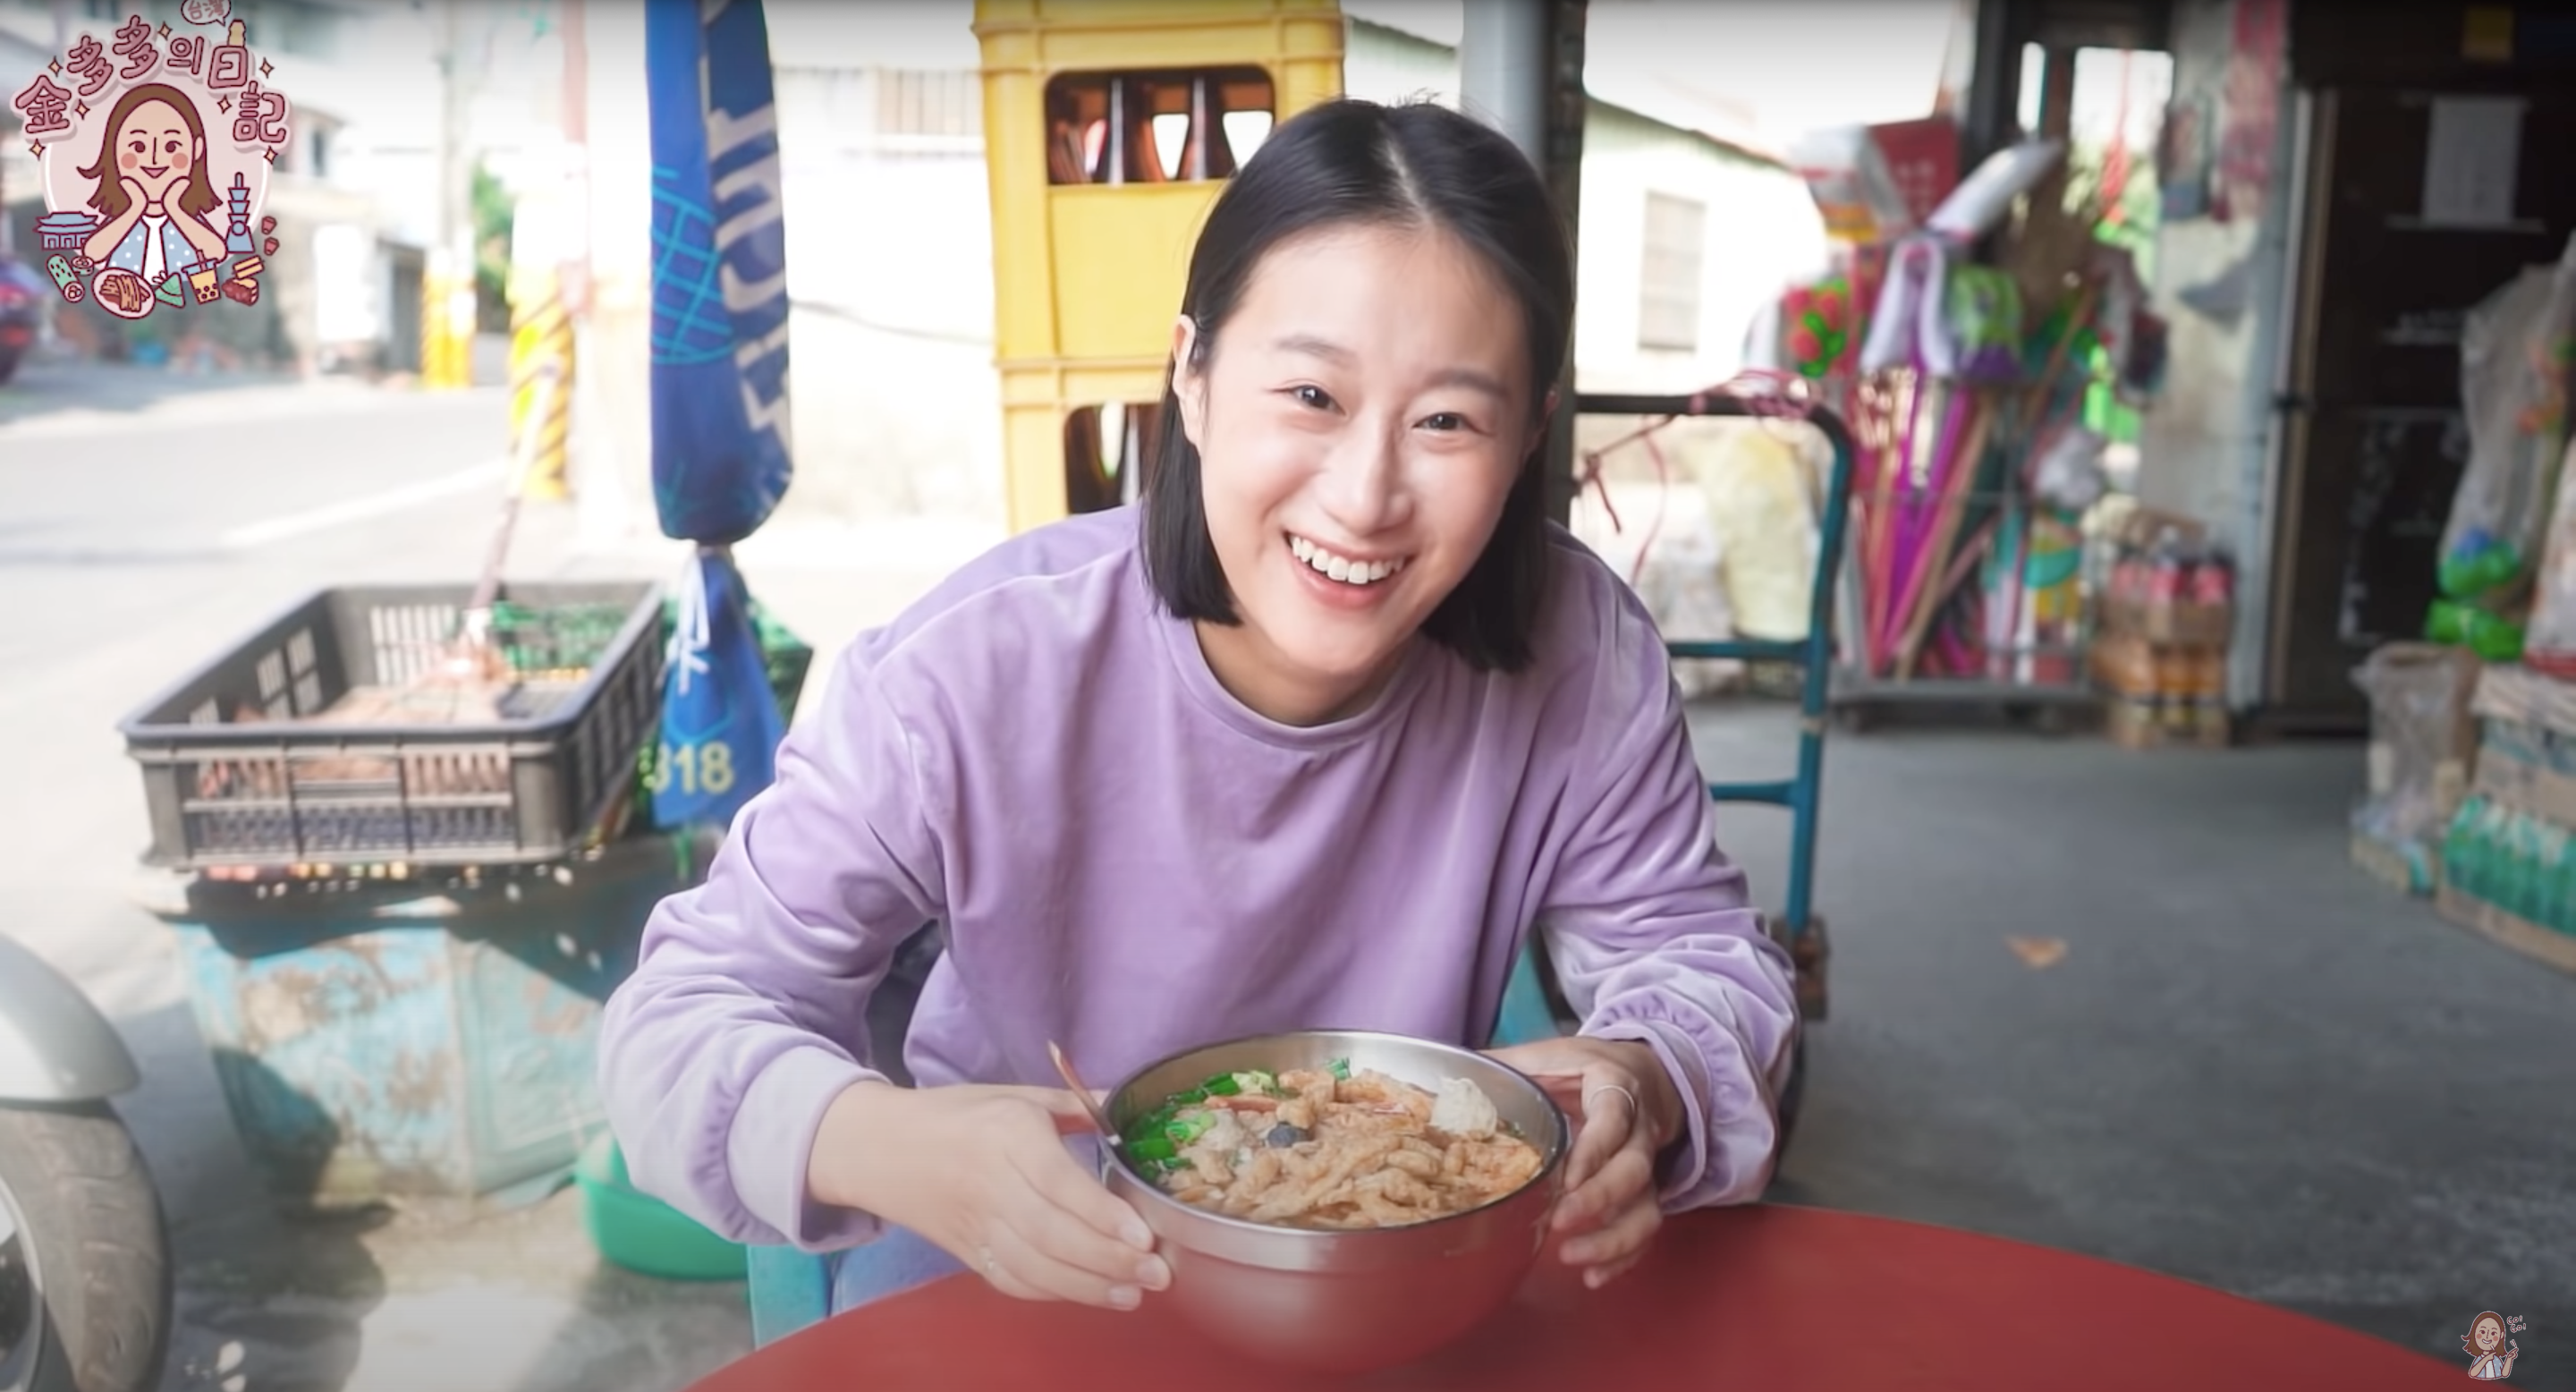 ผู้ตั้งถิ่นฐานใหม่ชาวเกาหลีเที่ยวชมหมู่บ้านว่านตานเมืองผิงตง ชิมอาหารคนท้องถิ่น รสชาติอร่อยแต่ราคาน่ารัก (ภาพจาก／跟著多多一起走Dada Kim)